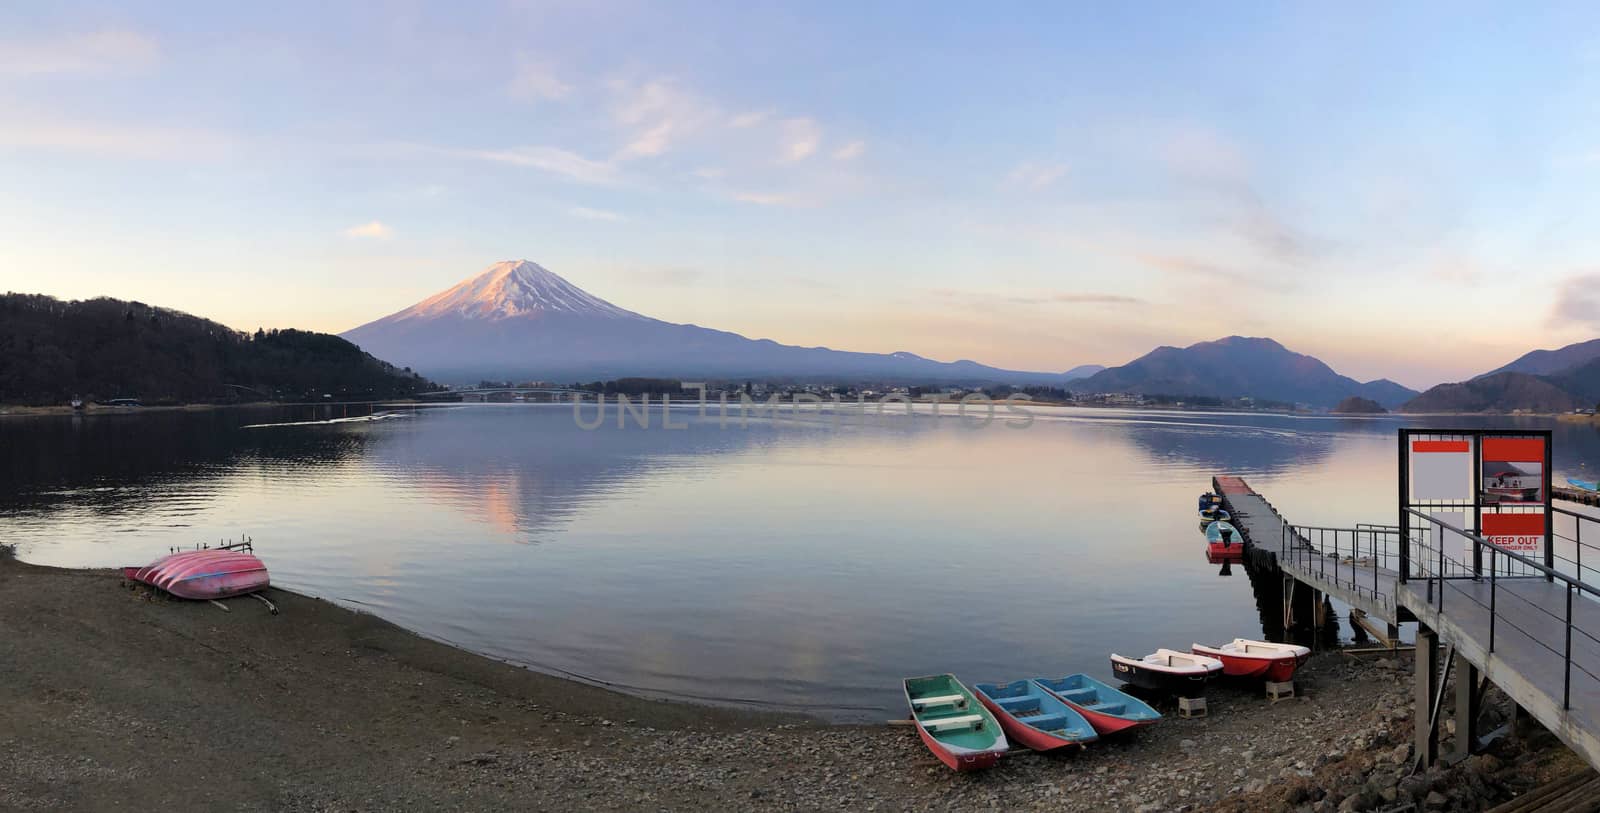 Panaromic sunrise beautiful view of  Mountain Fuji and Lake Kawa by Surasak